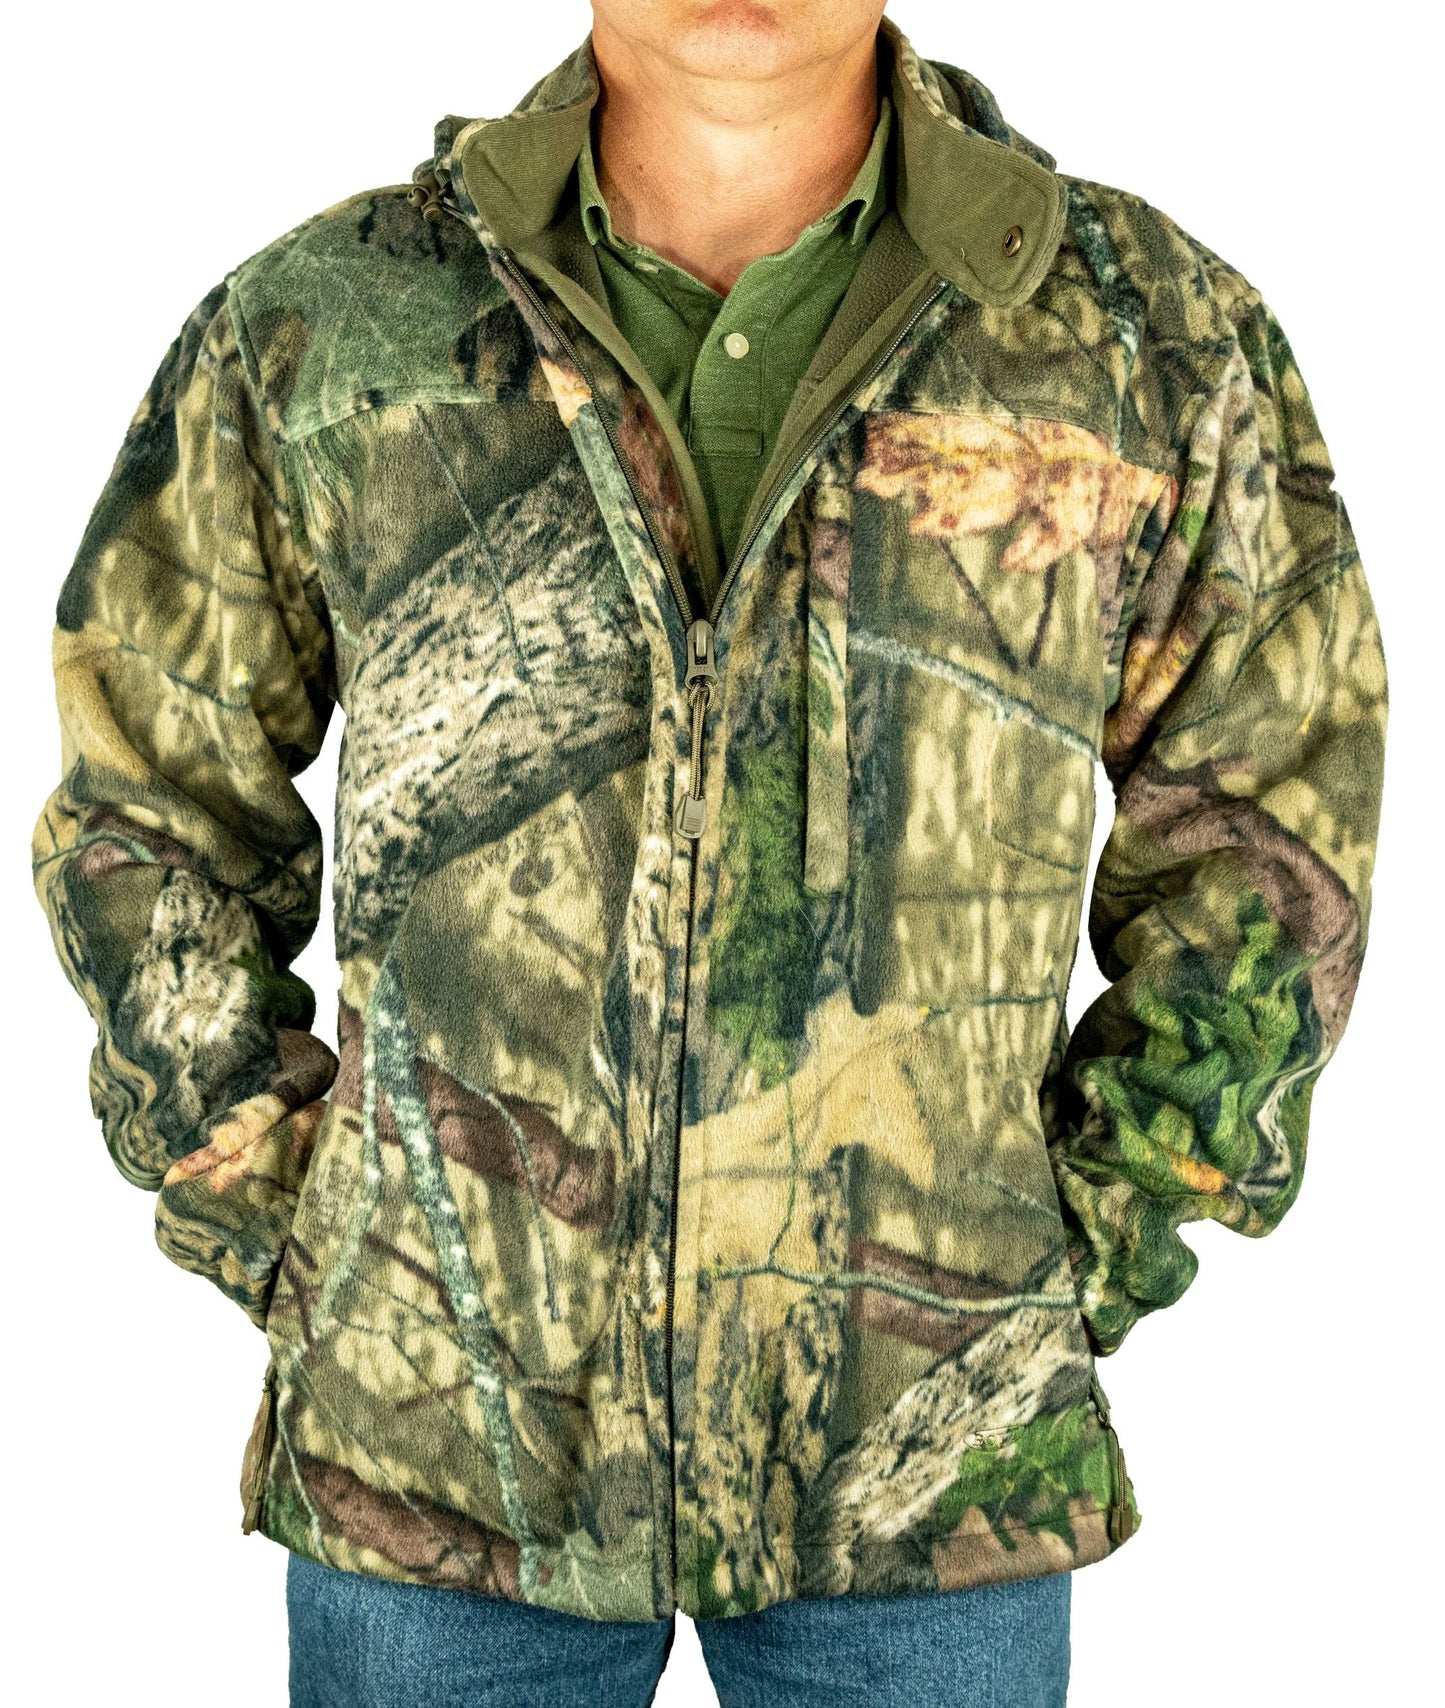 TripleLoc Mossy Oak Camo Jacket